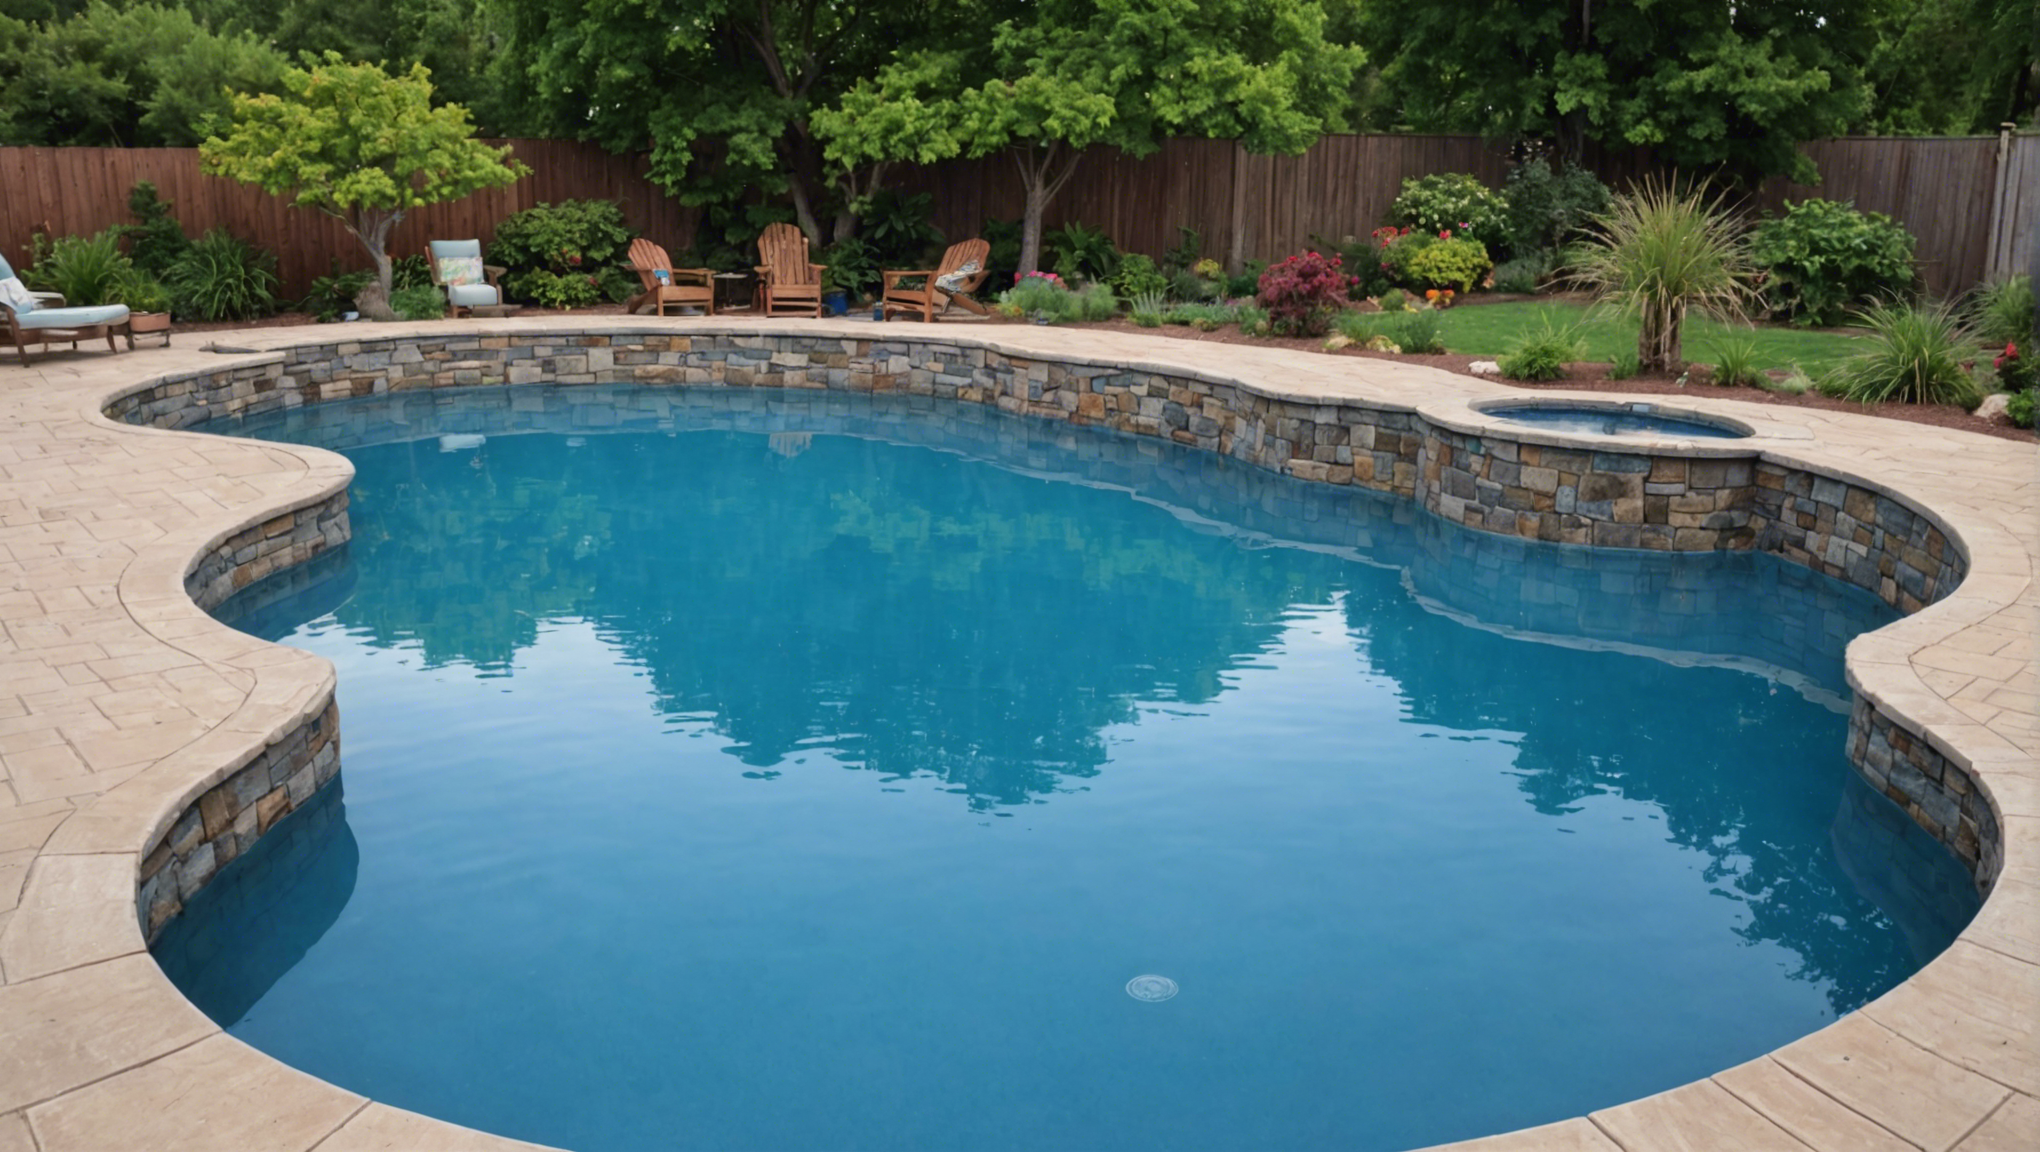 découvrez comment vérifier si l'eau de votre piscine est saturée en minéraux, en utilisant des tests simples et en suivant nos conseils de maintenance efficaces.